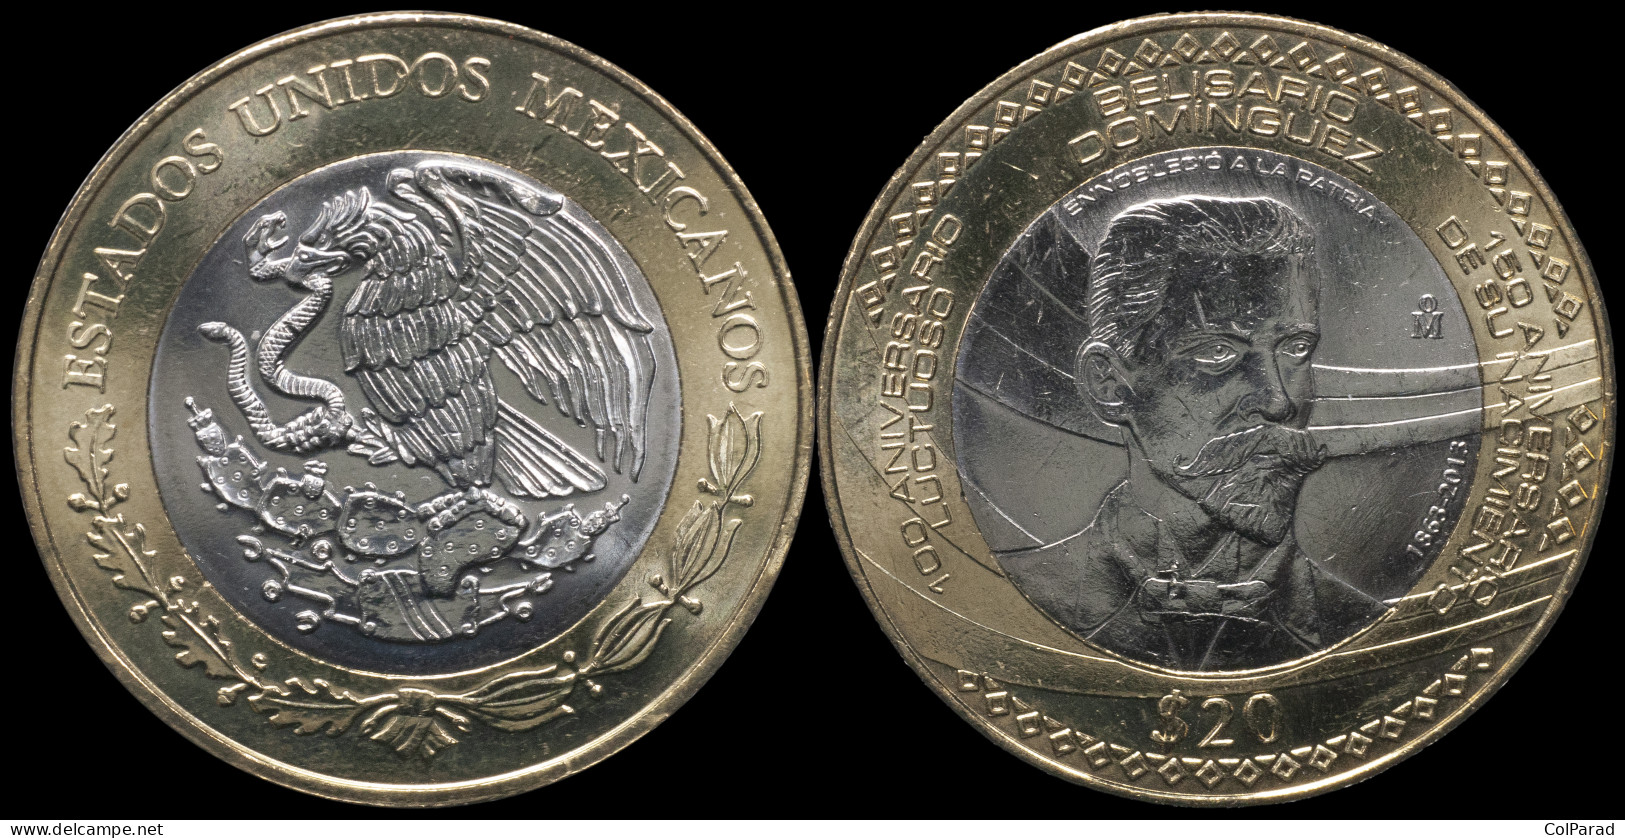 MEXICO COIN 20 PESOS - KM#970 Bi-Metallic Unc - 2013 - Belisario Domínguez - Messico